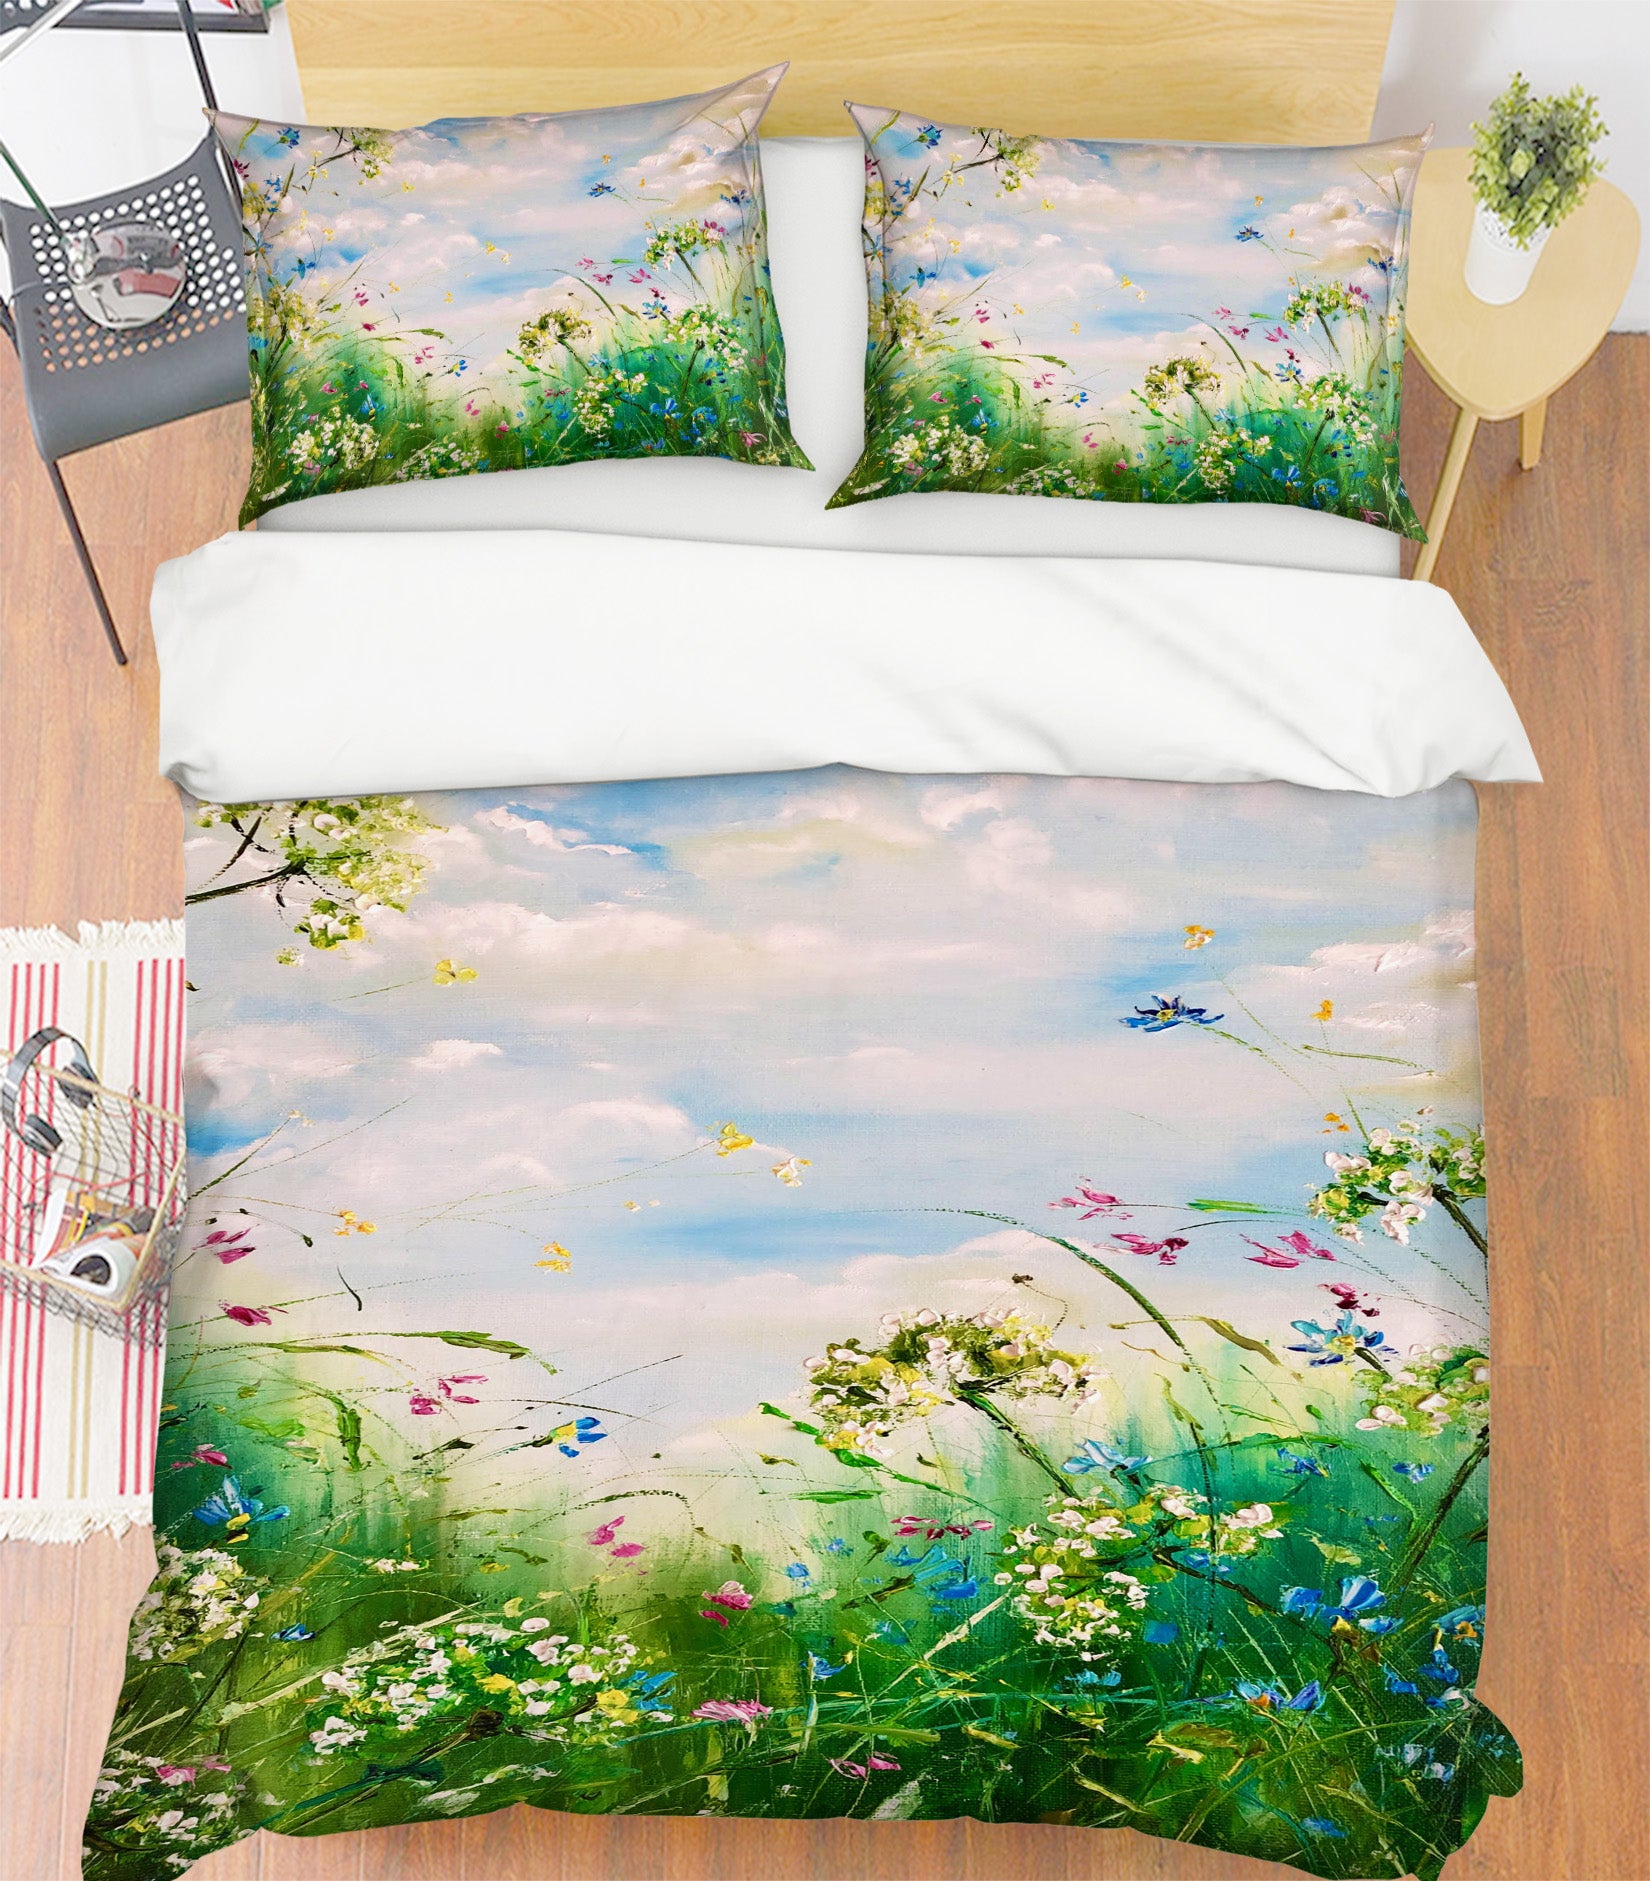 3D Wild Grass Flower 555 Skromova Marina Bedding Bed Pillowcases Quilt